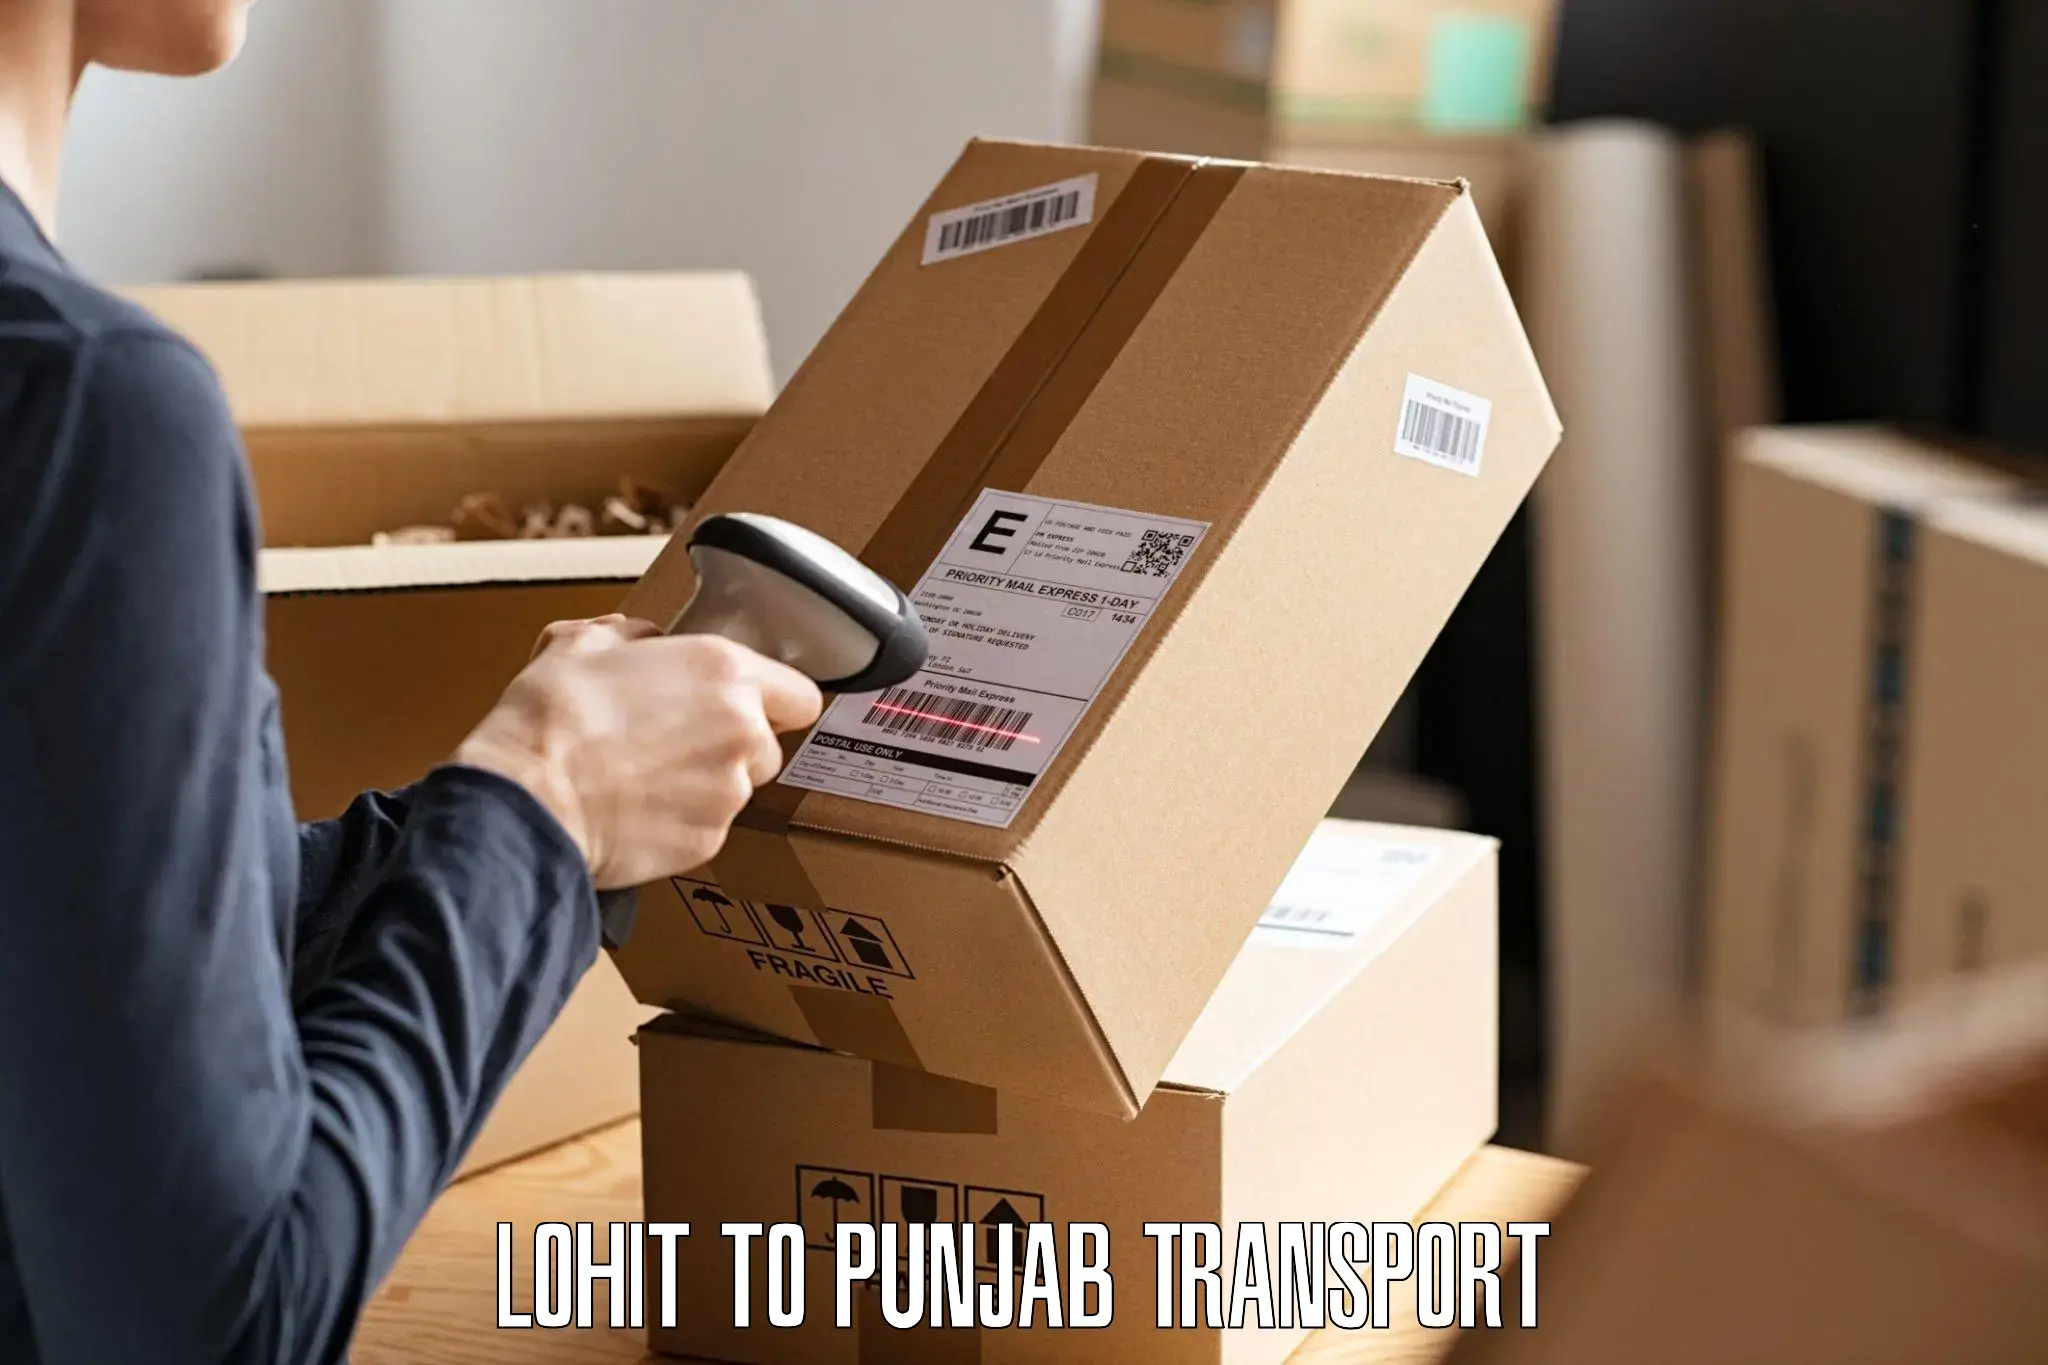 Furniture transport service Lohit to Punjab